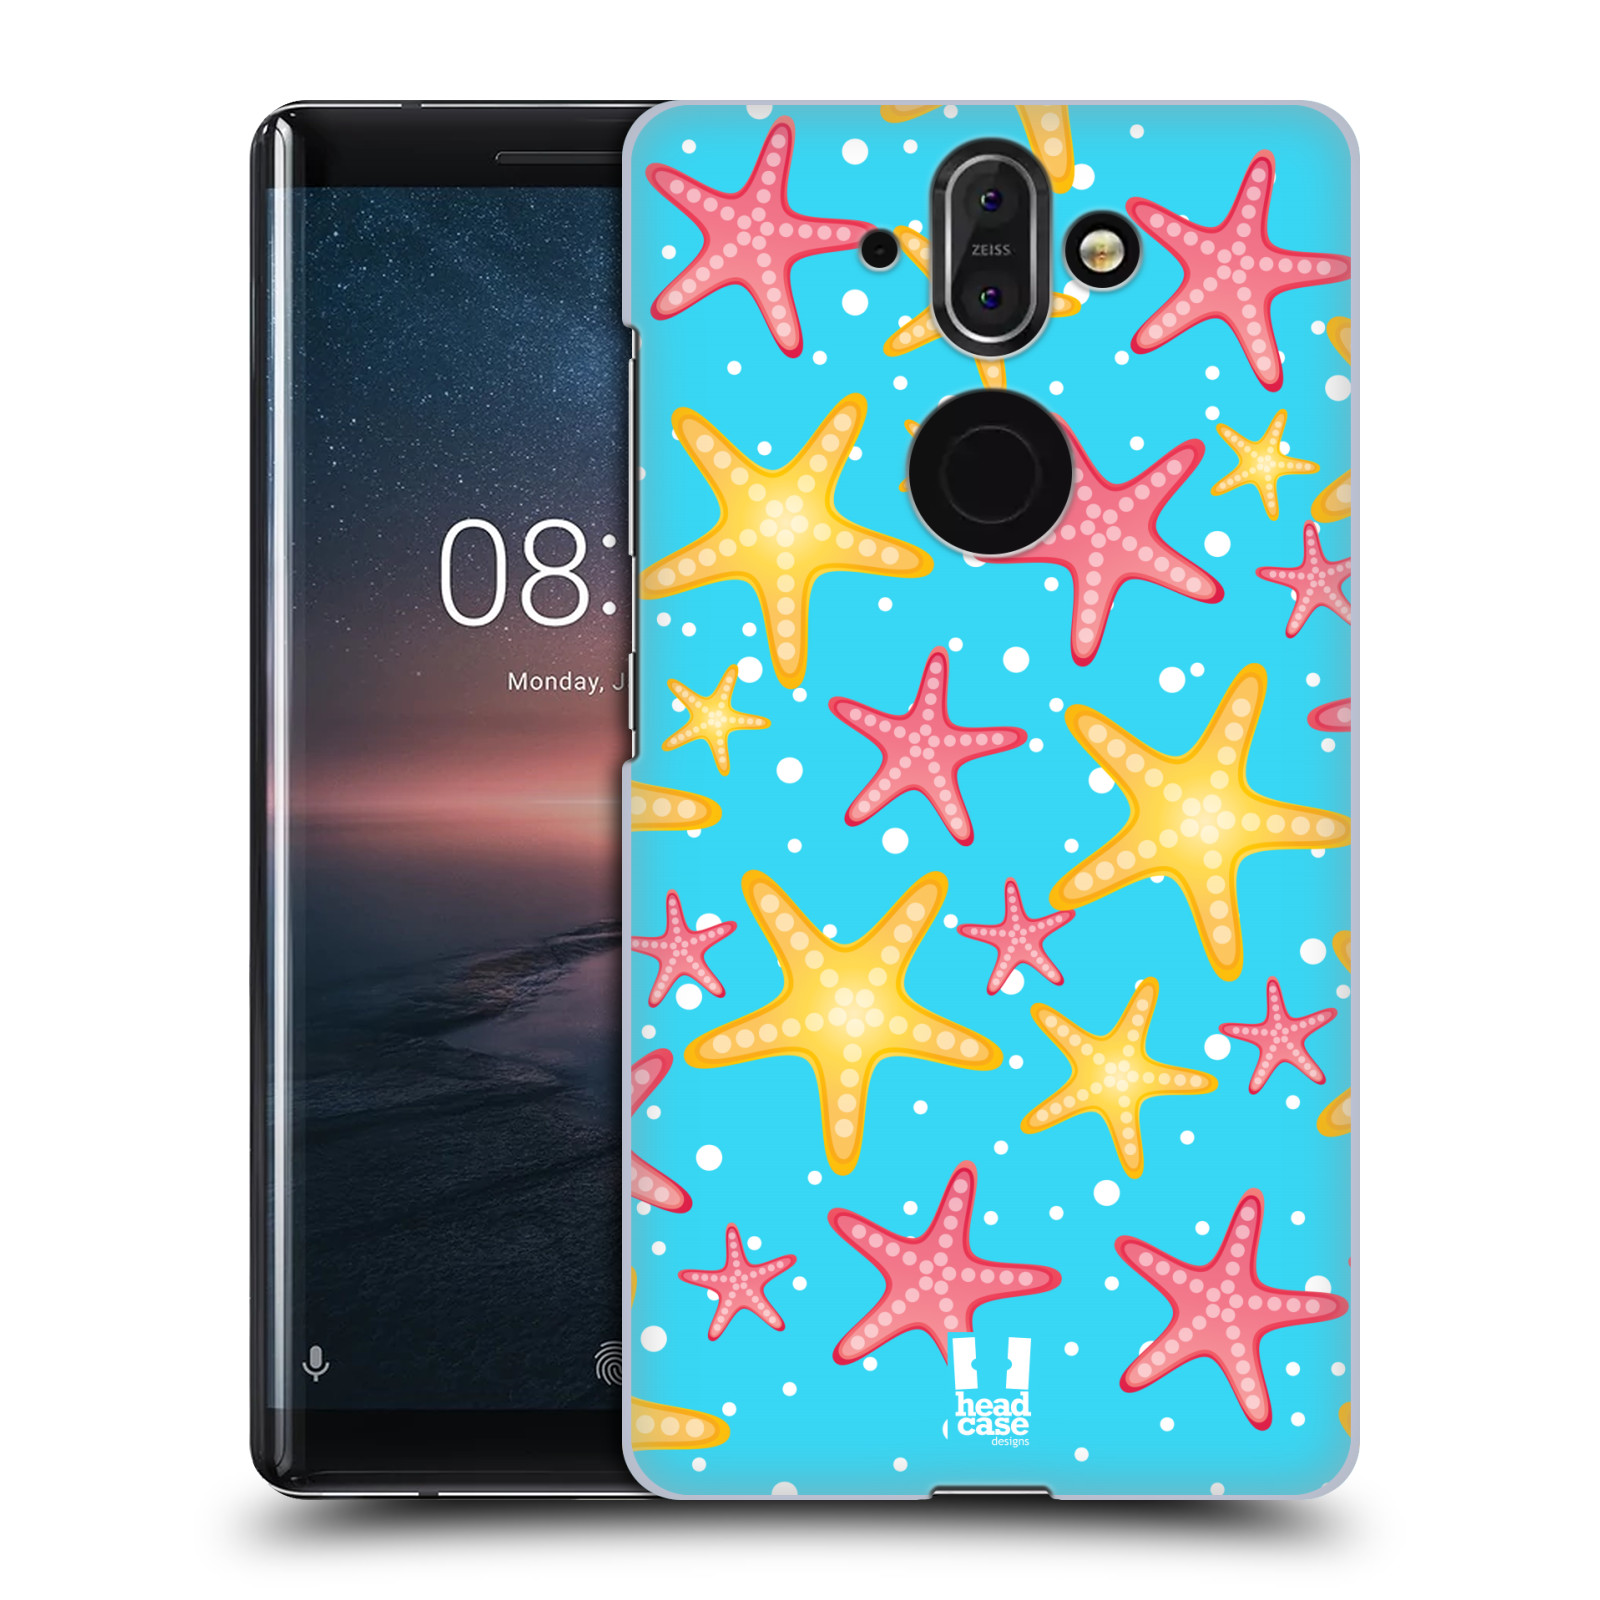 Zadní obal pro mobil Nokia 8 Sirocco - HEAD CASE - kreslený mořský vzor hvězda